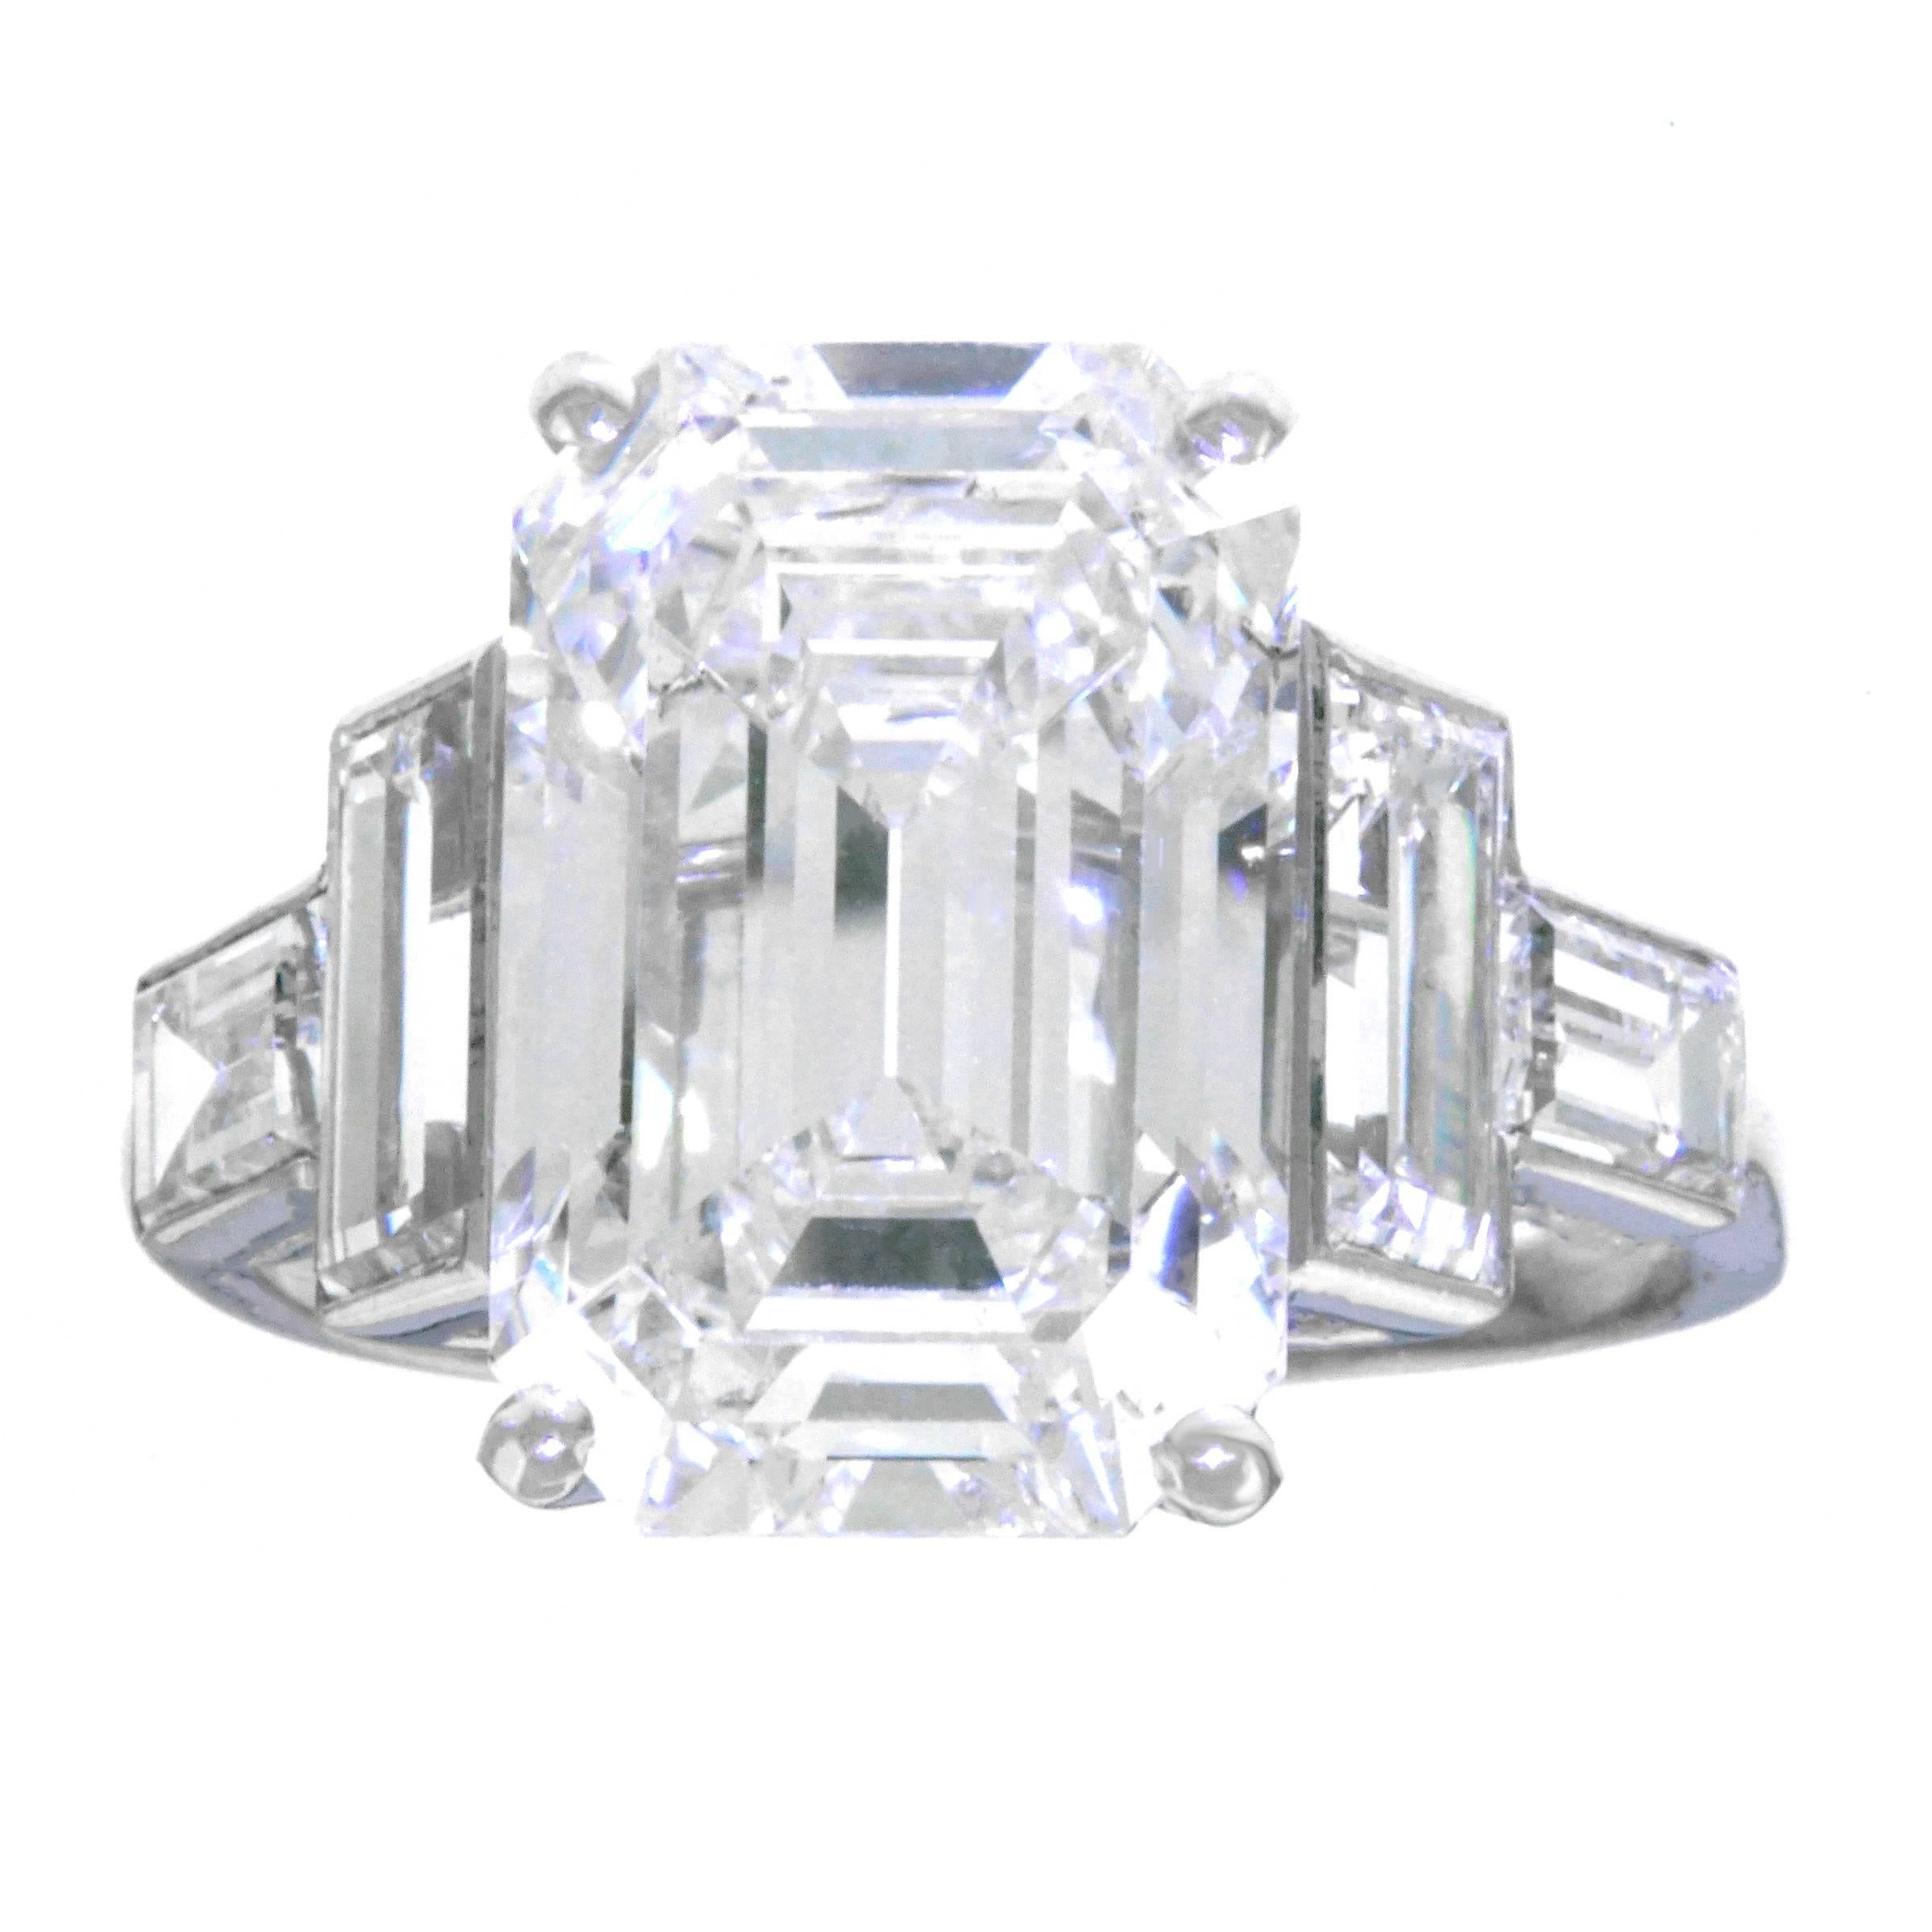 Spectacular 6.64 Carat Art Deco Diamond Ring in Platinum GIA